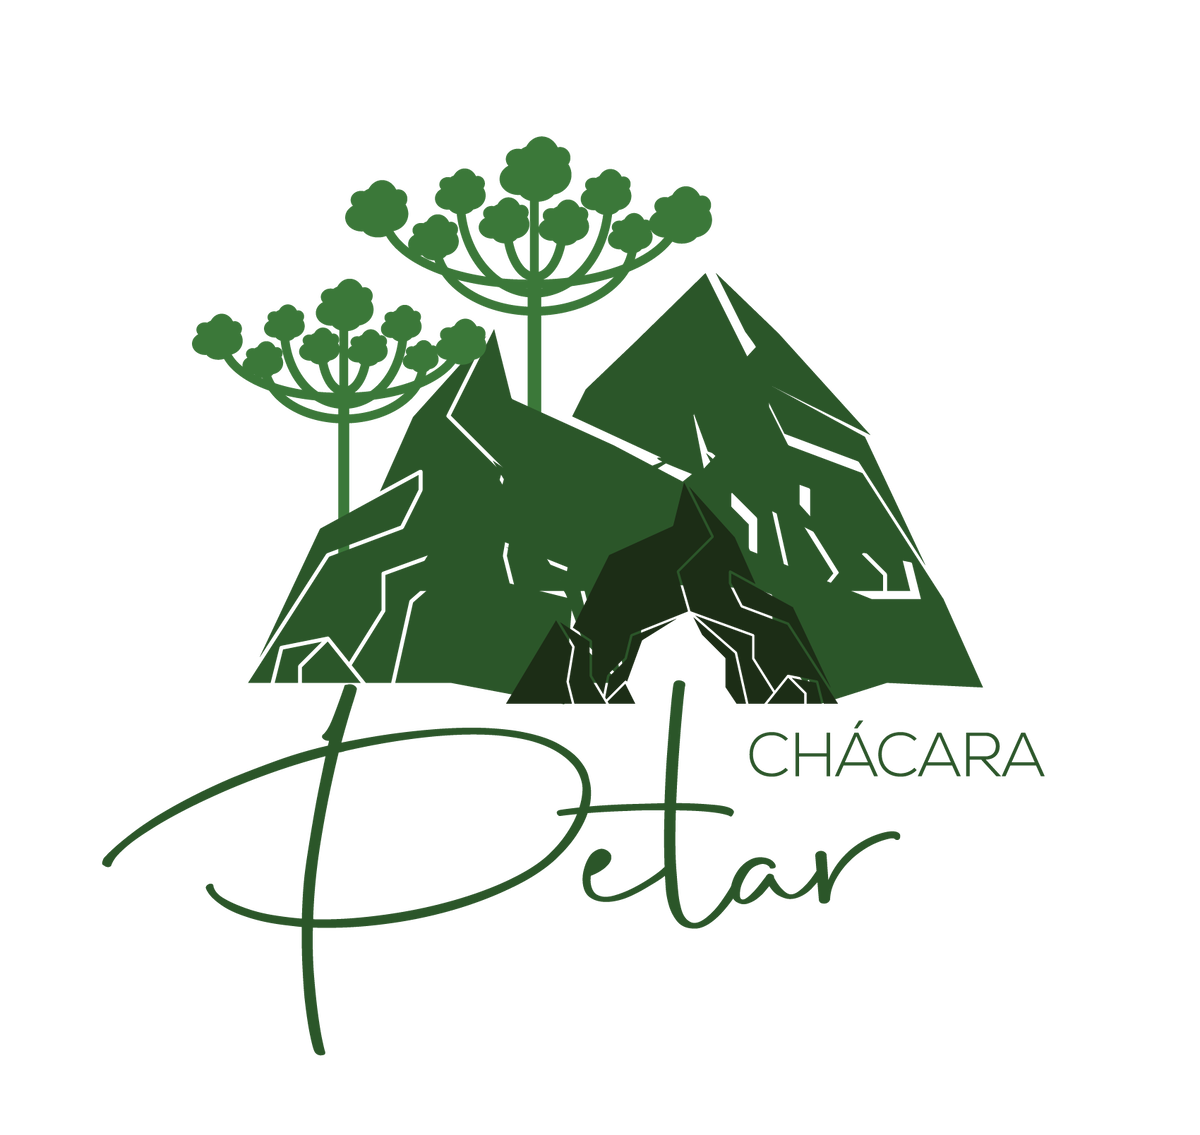 Petar公园旁的Chácara专用之旅